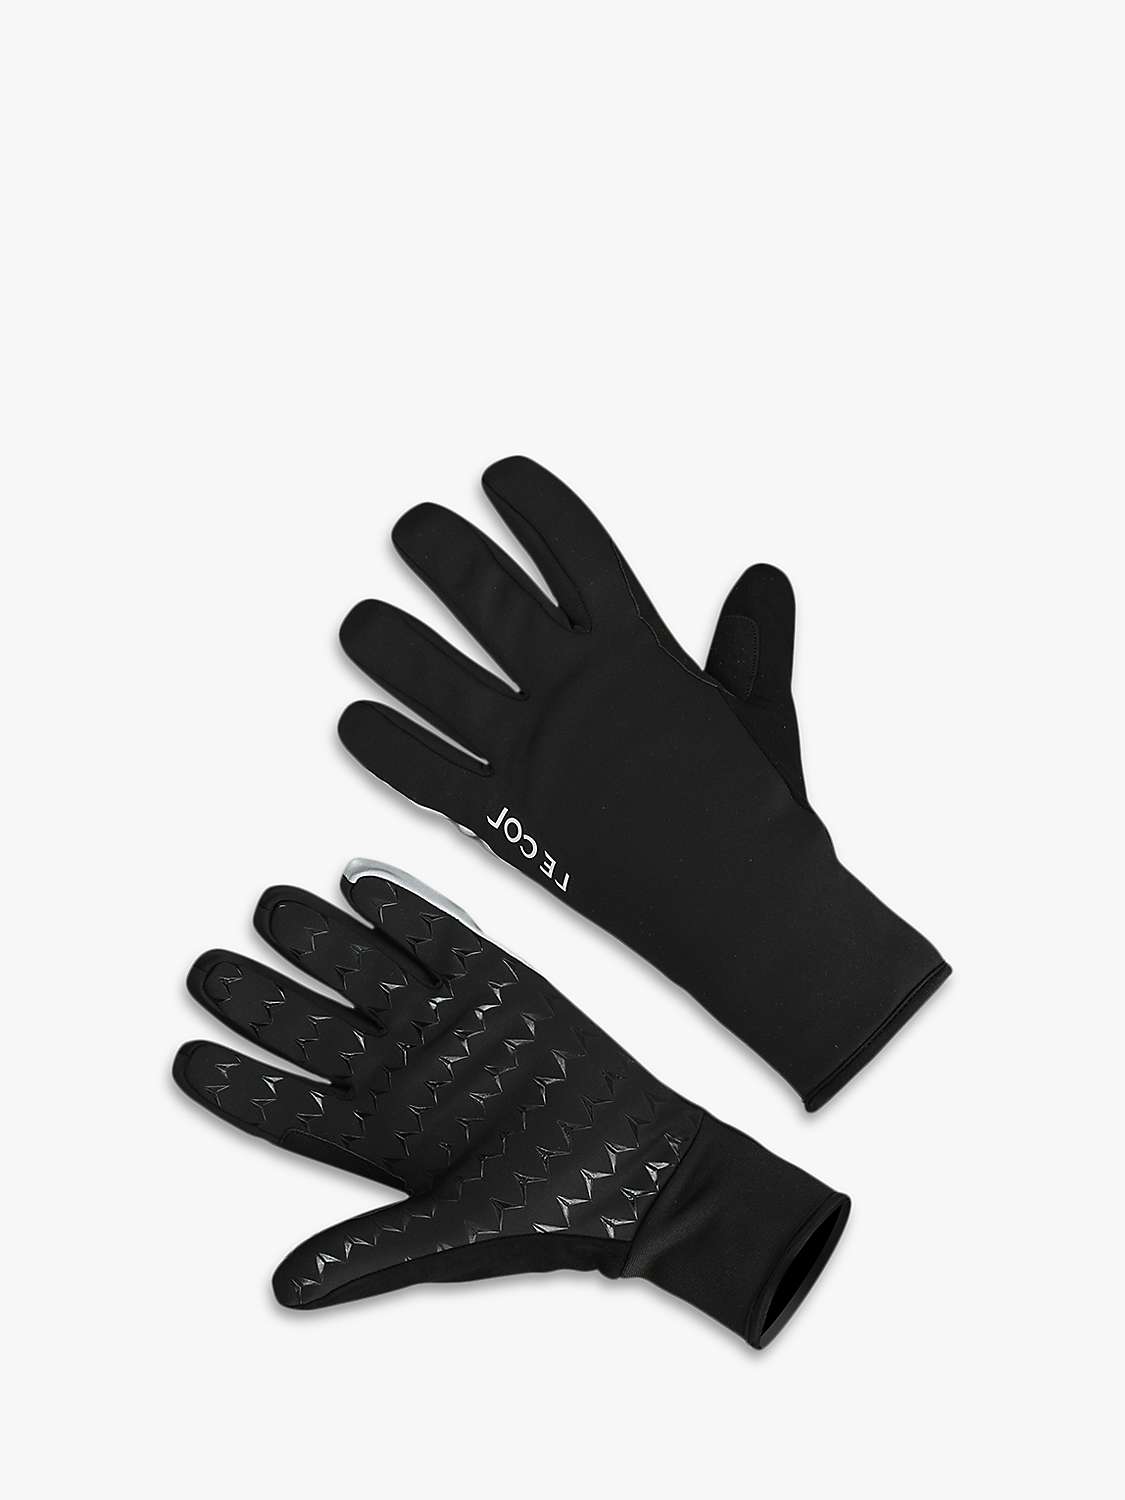 Buy Le Col Hors Categorie Deep Winter Gloves, Black Online at johnlewis.com